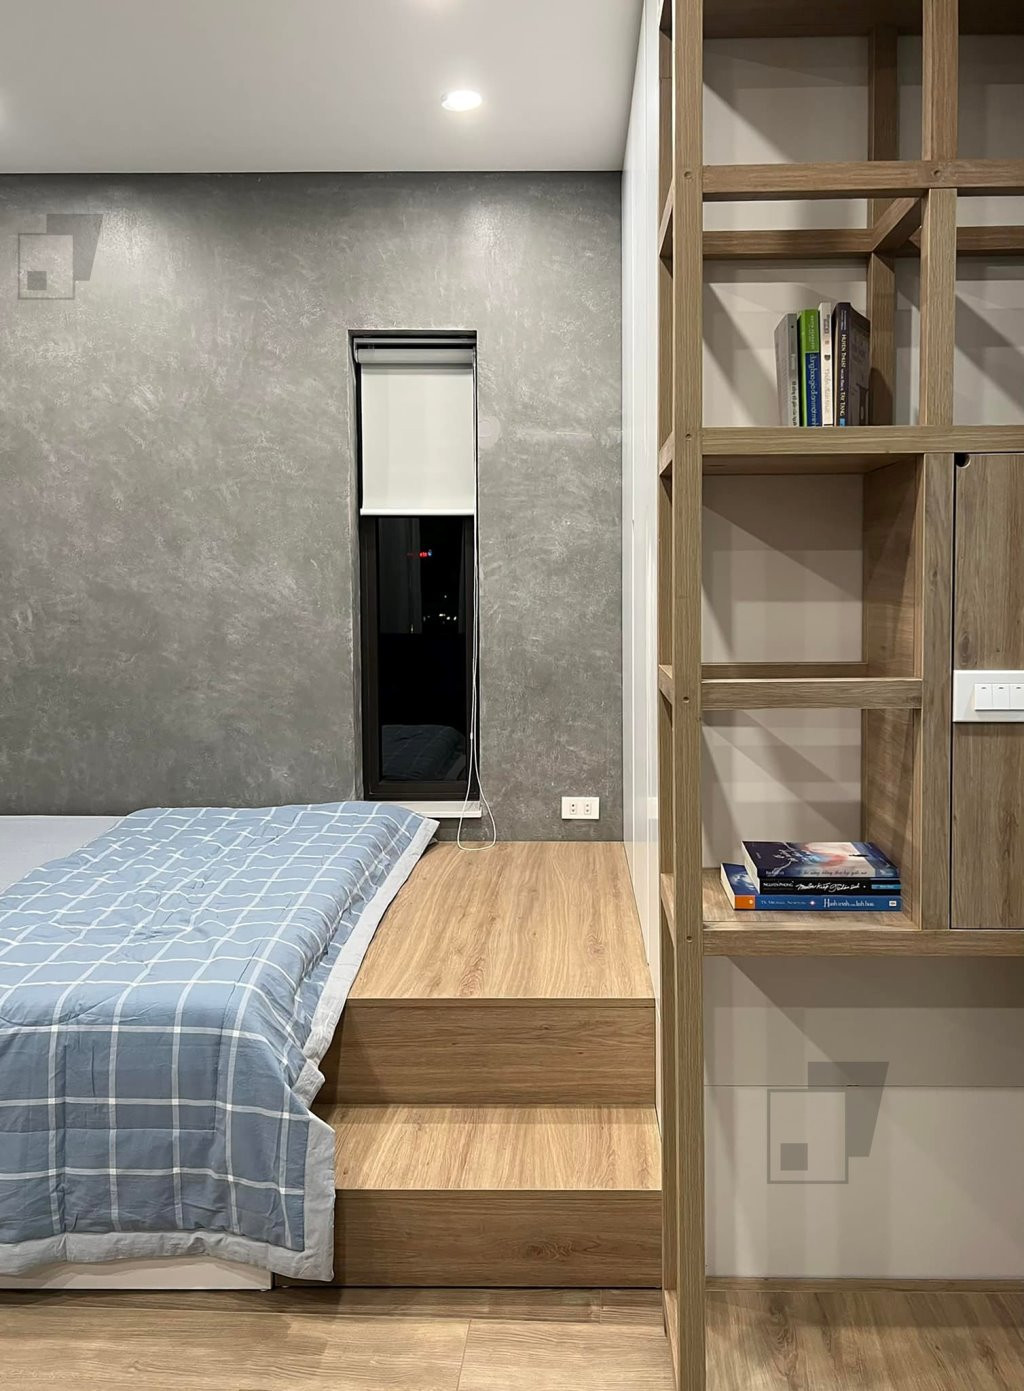 Phòng ngủ thiết kế nội thất đơn giản, sử dụng vật liệu chủ đạo là gỗ công nghiệp để tiết kiệm chi phí.